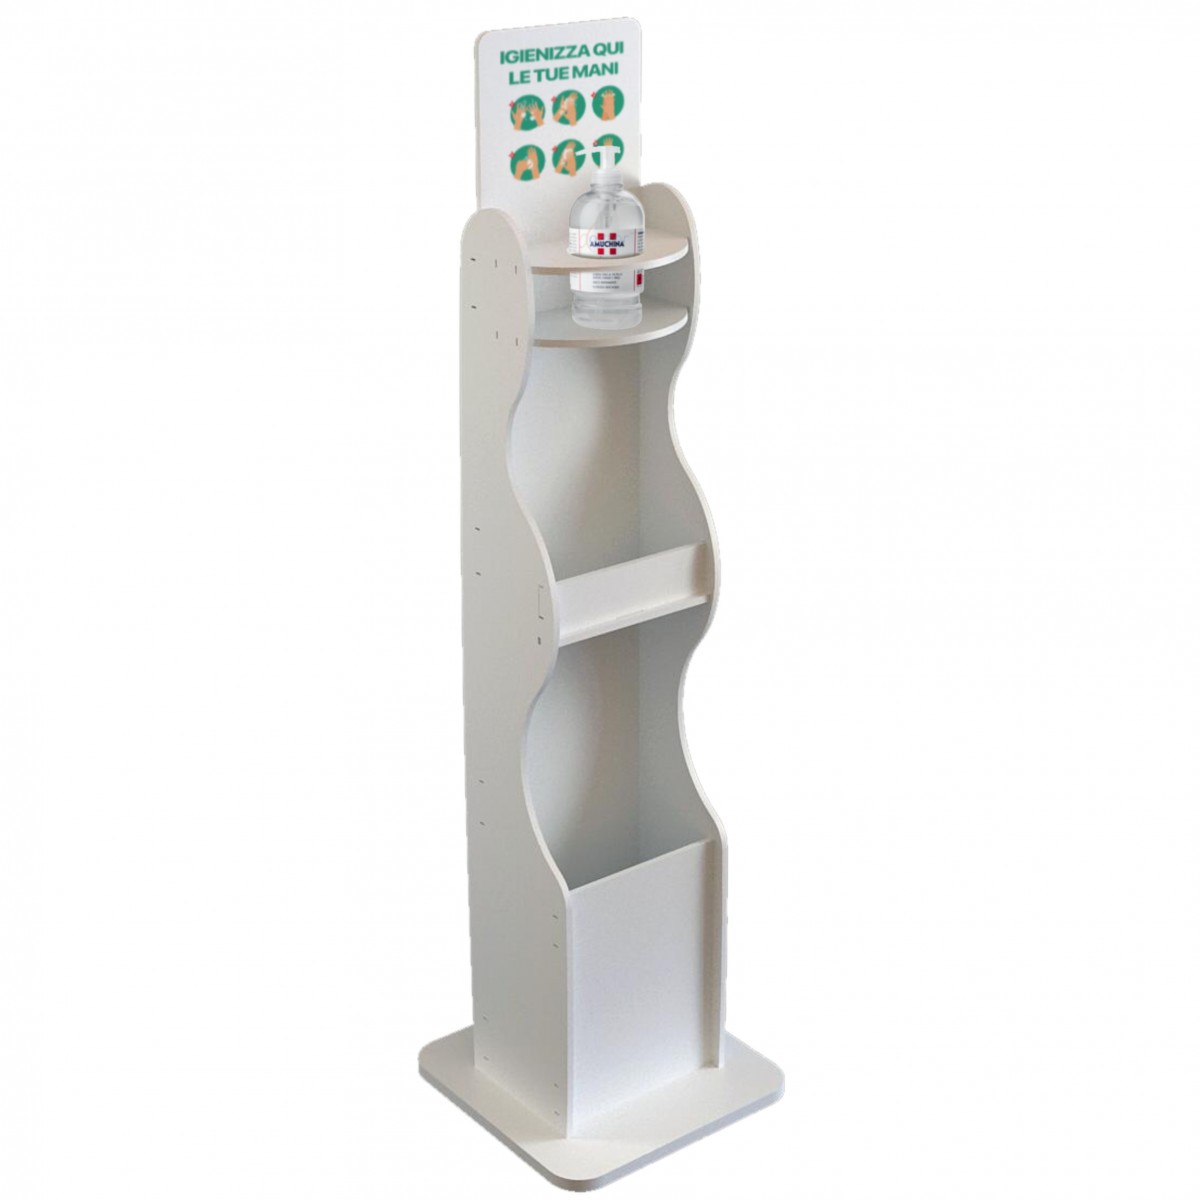 E-710 PSD - Dispenser / Distributore / Colonnina per igienizzante/gel disinfettante 3 in 1 da terra